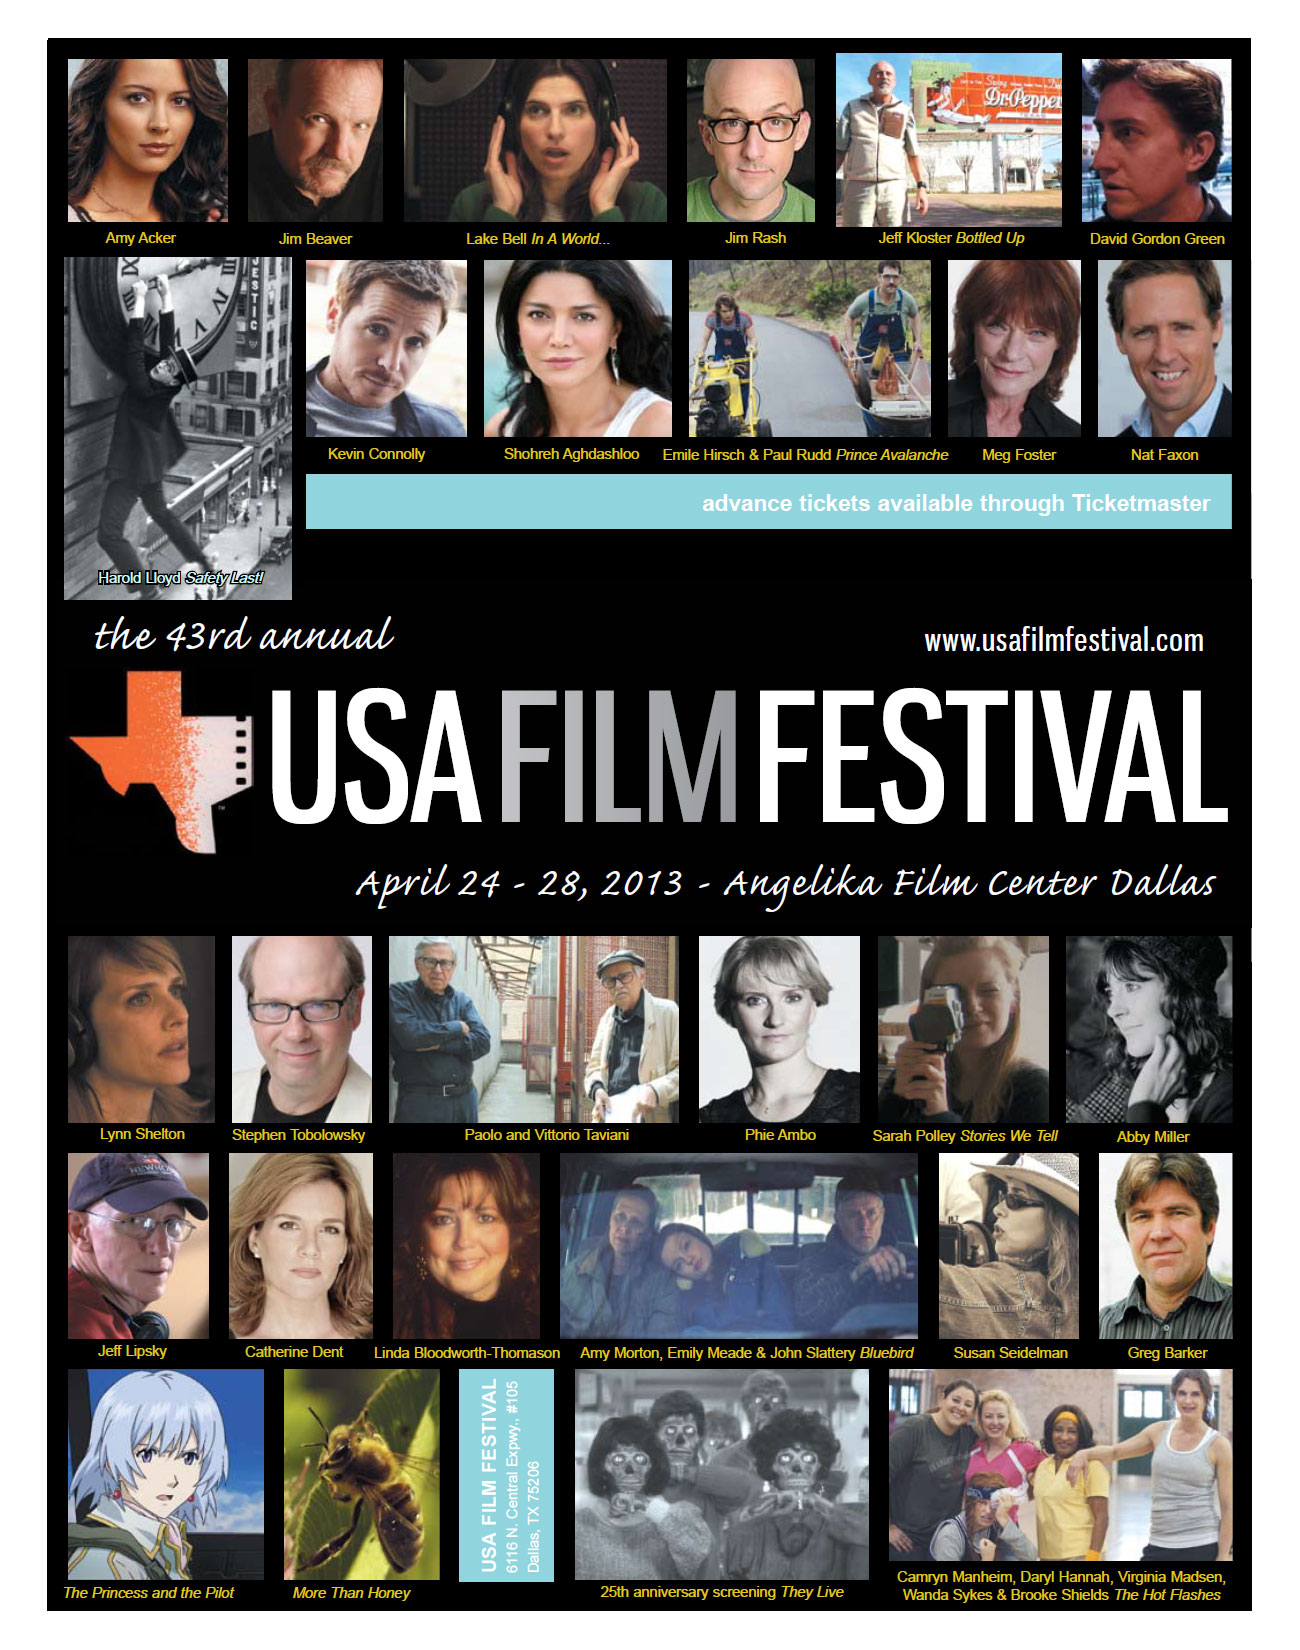 the-43rd-annual-usa-film-festival-returns-to-dallas-april-24-28